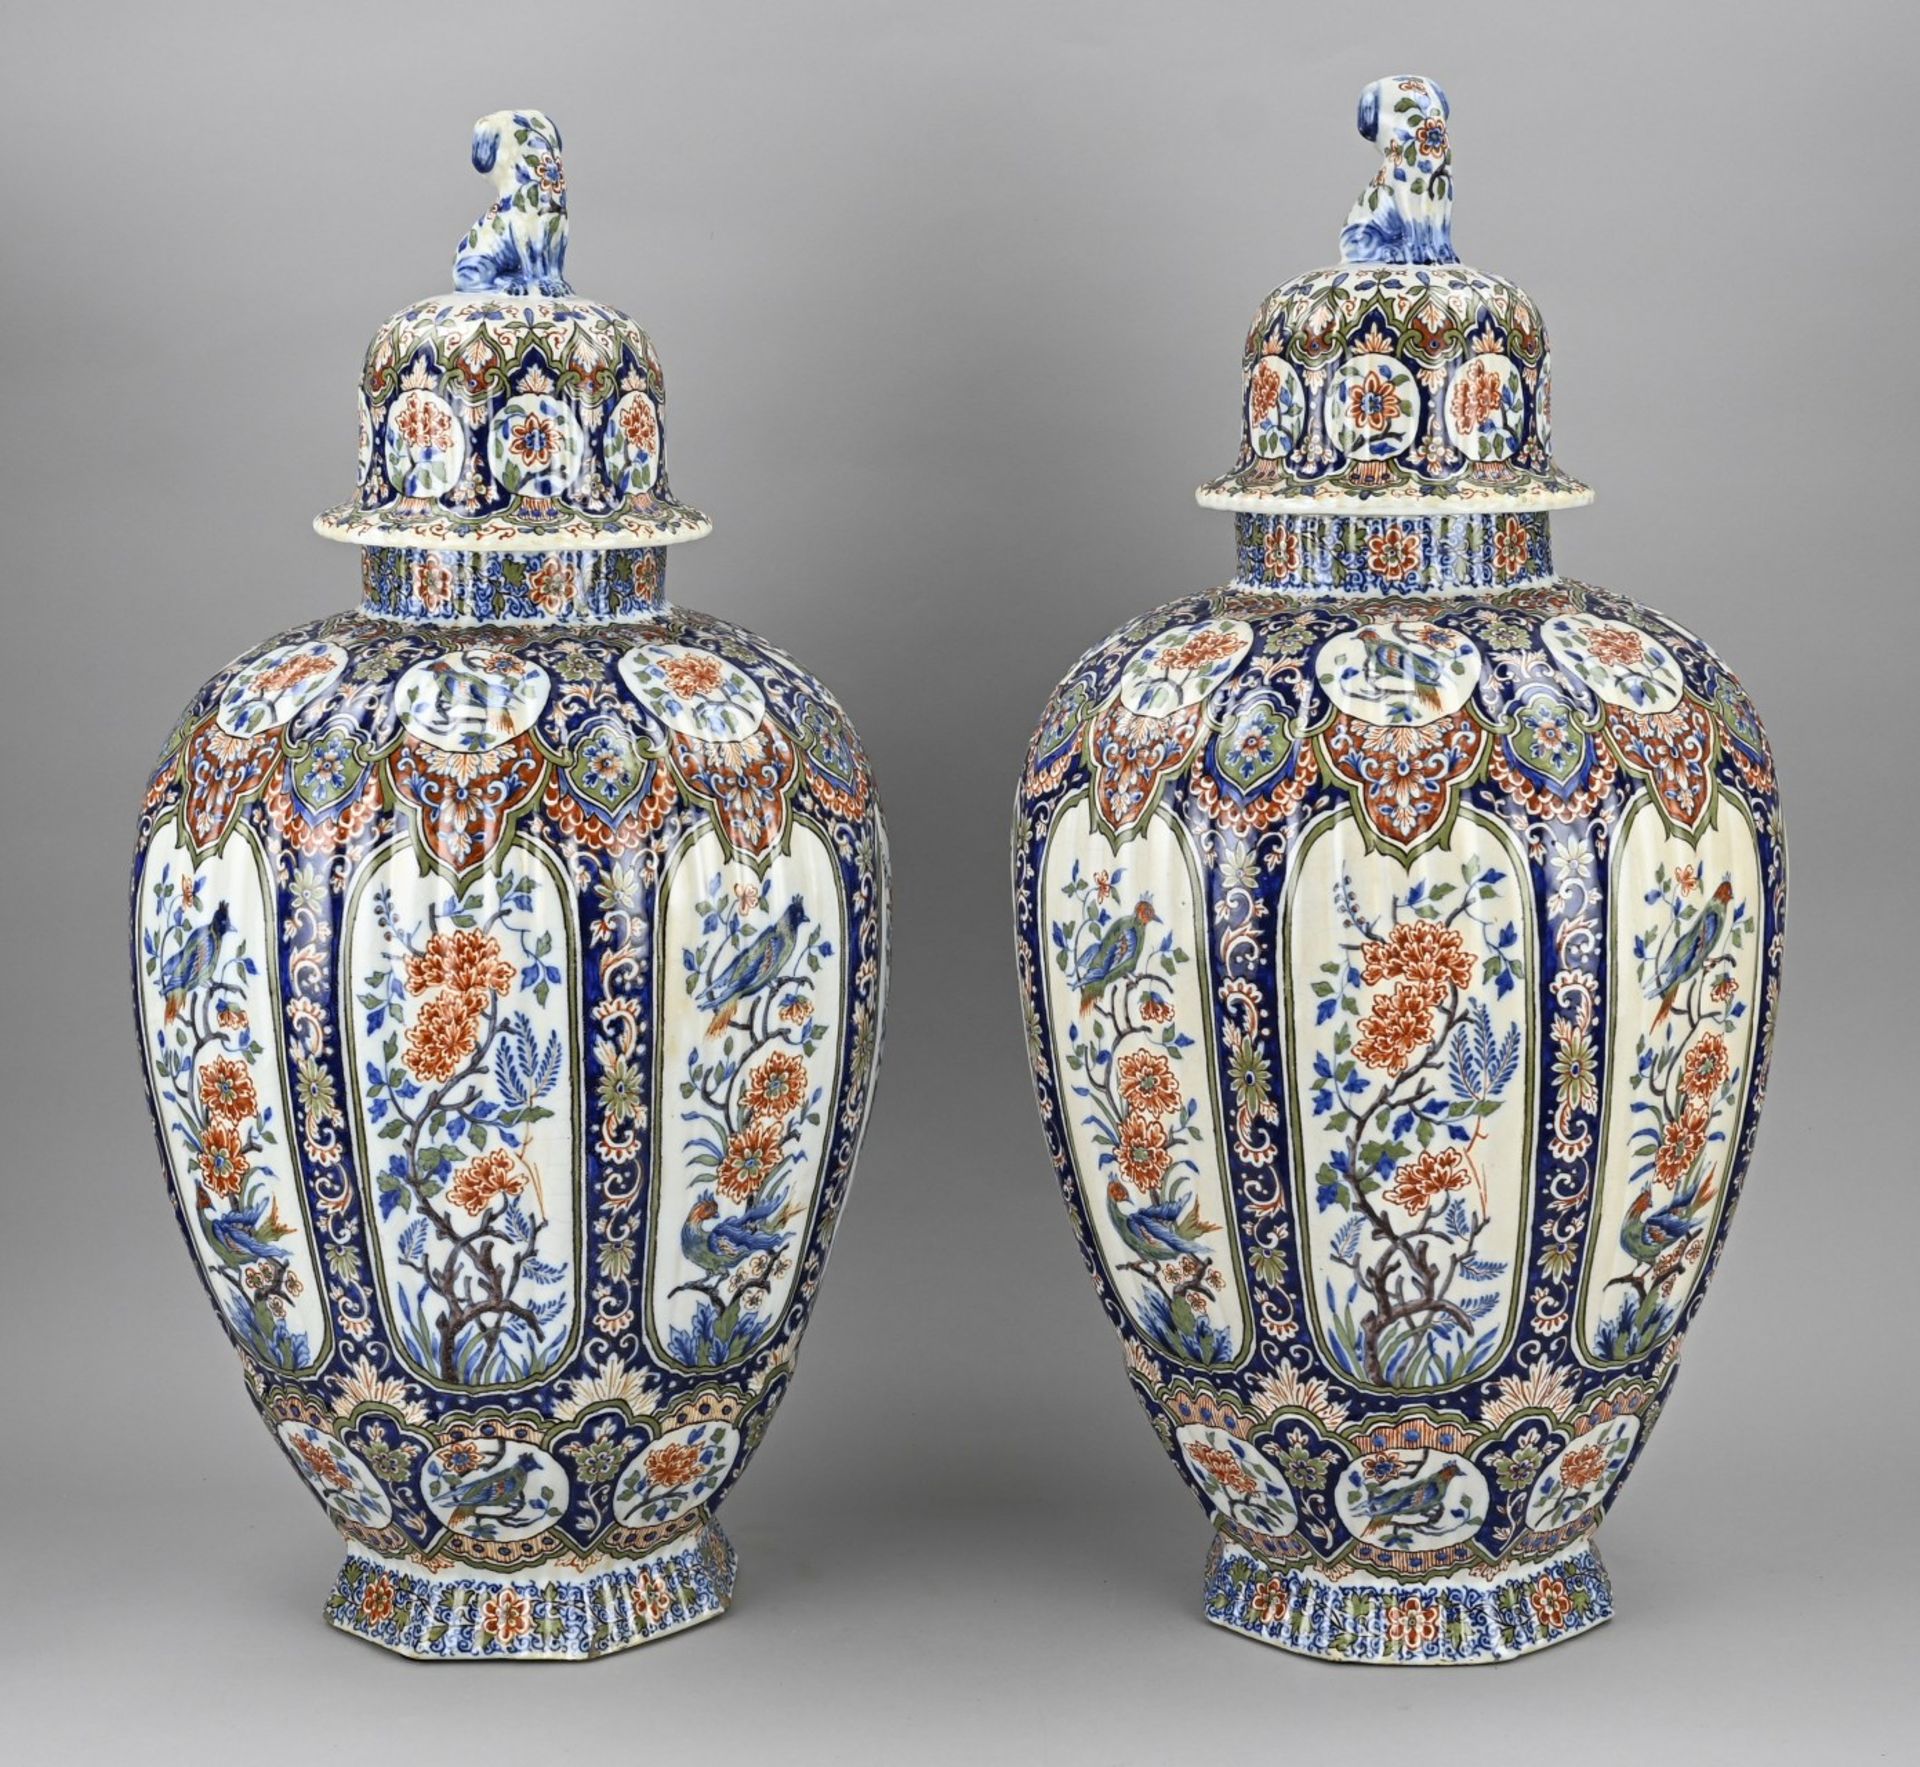 2x Large Delft lidded vase, H 63 cm. - Image 2 of 3